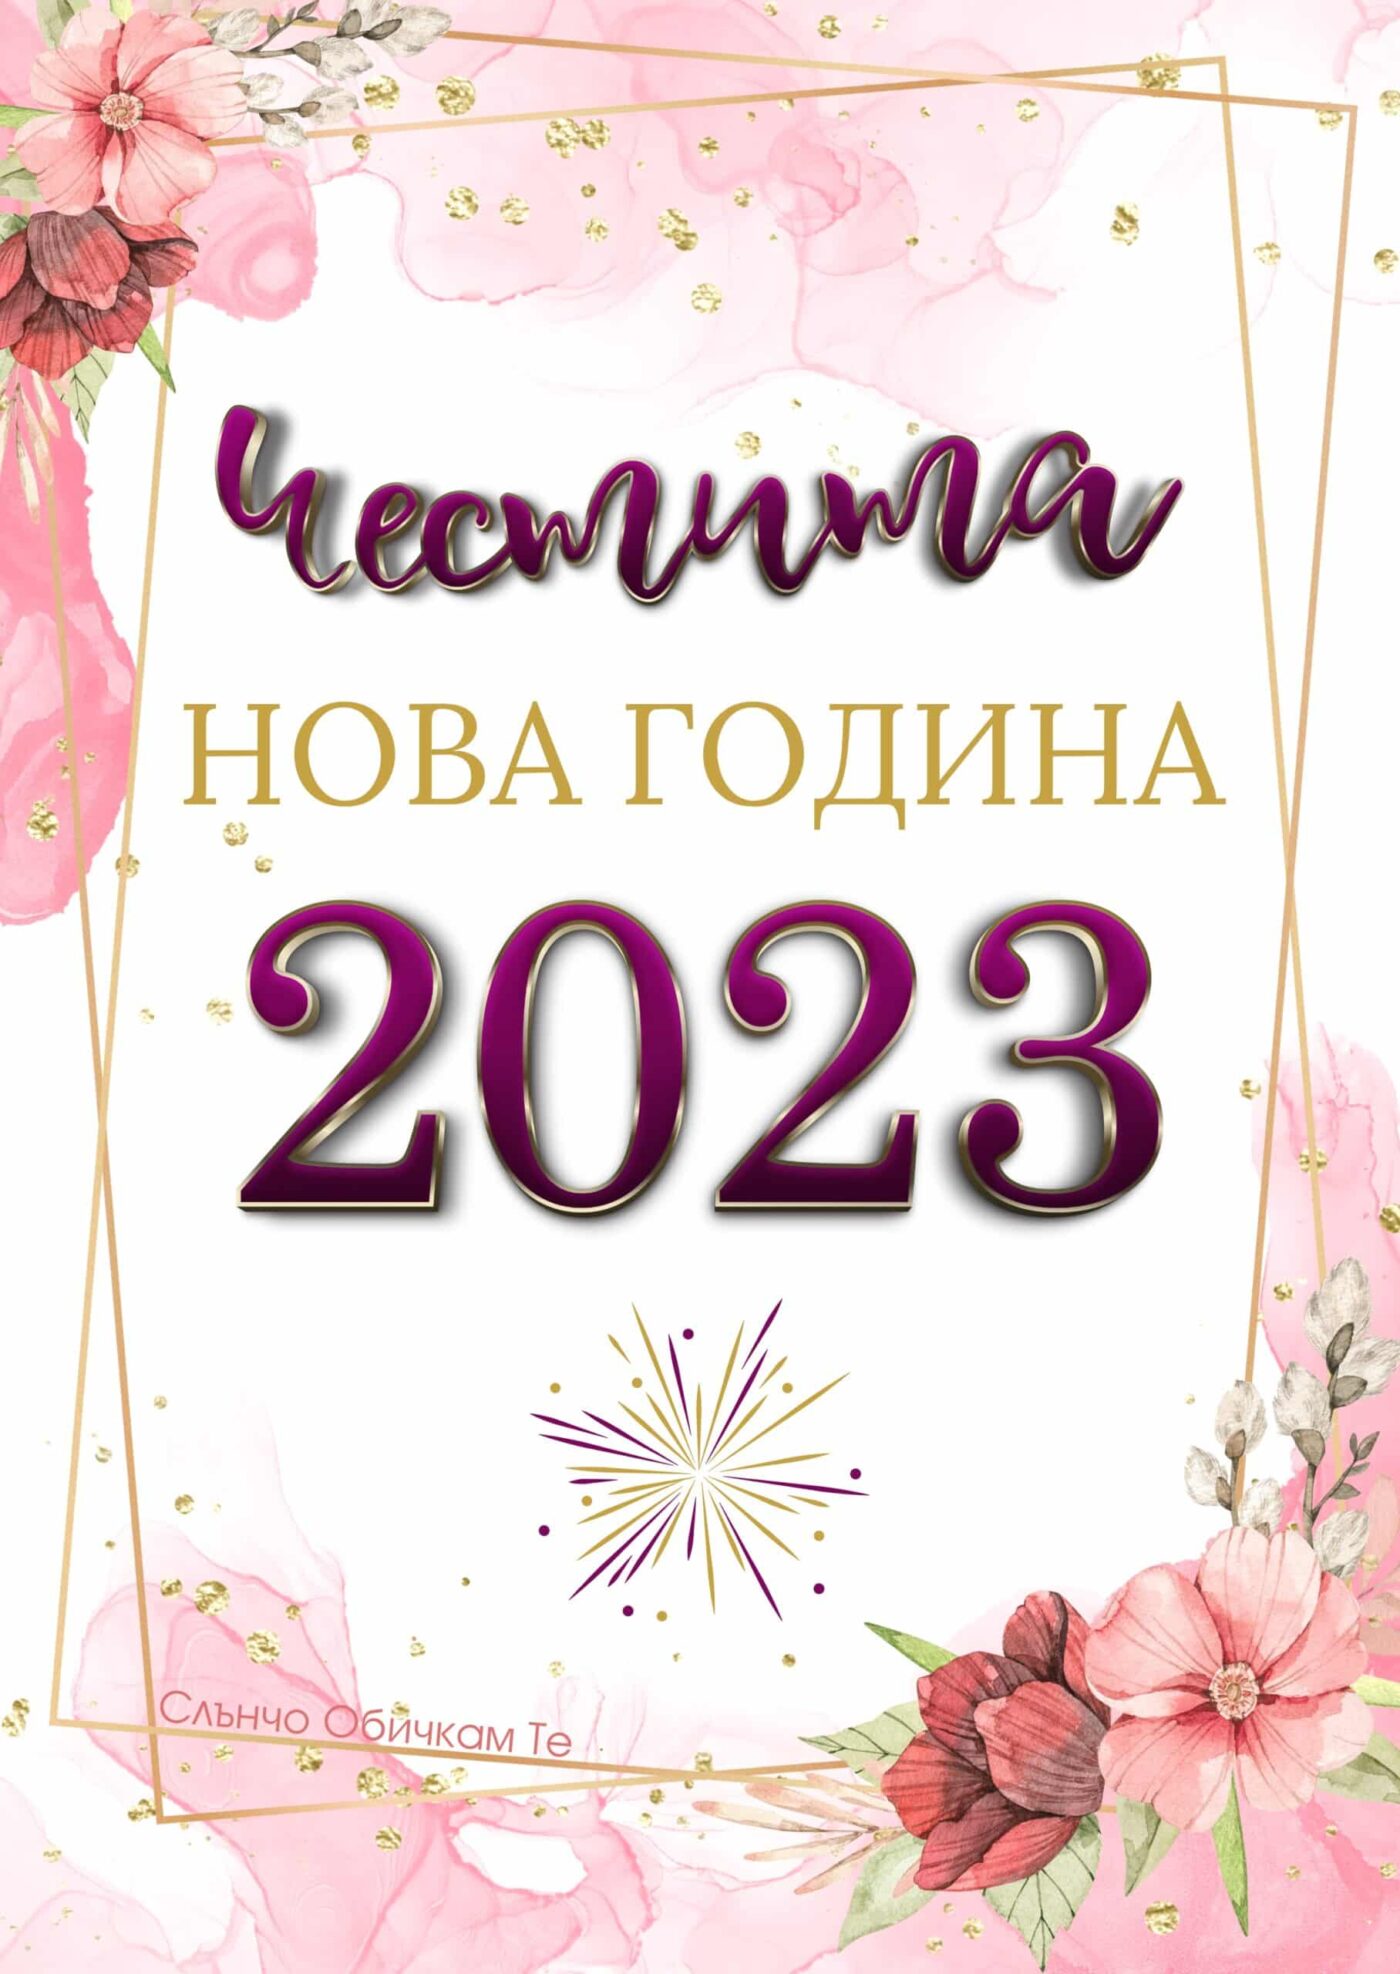 Честита Нова година с цветя, новогодишни картички, пожелания за нова година 2023, картички за 2023 година, нова година 2023, картички за новата година от слънчо обичкам те